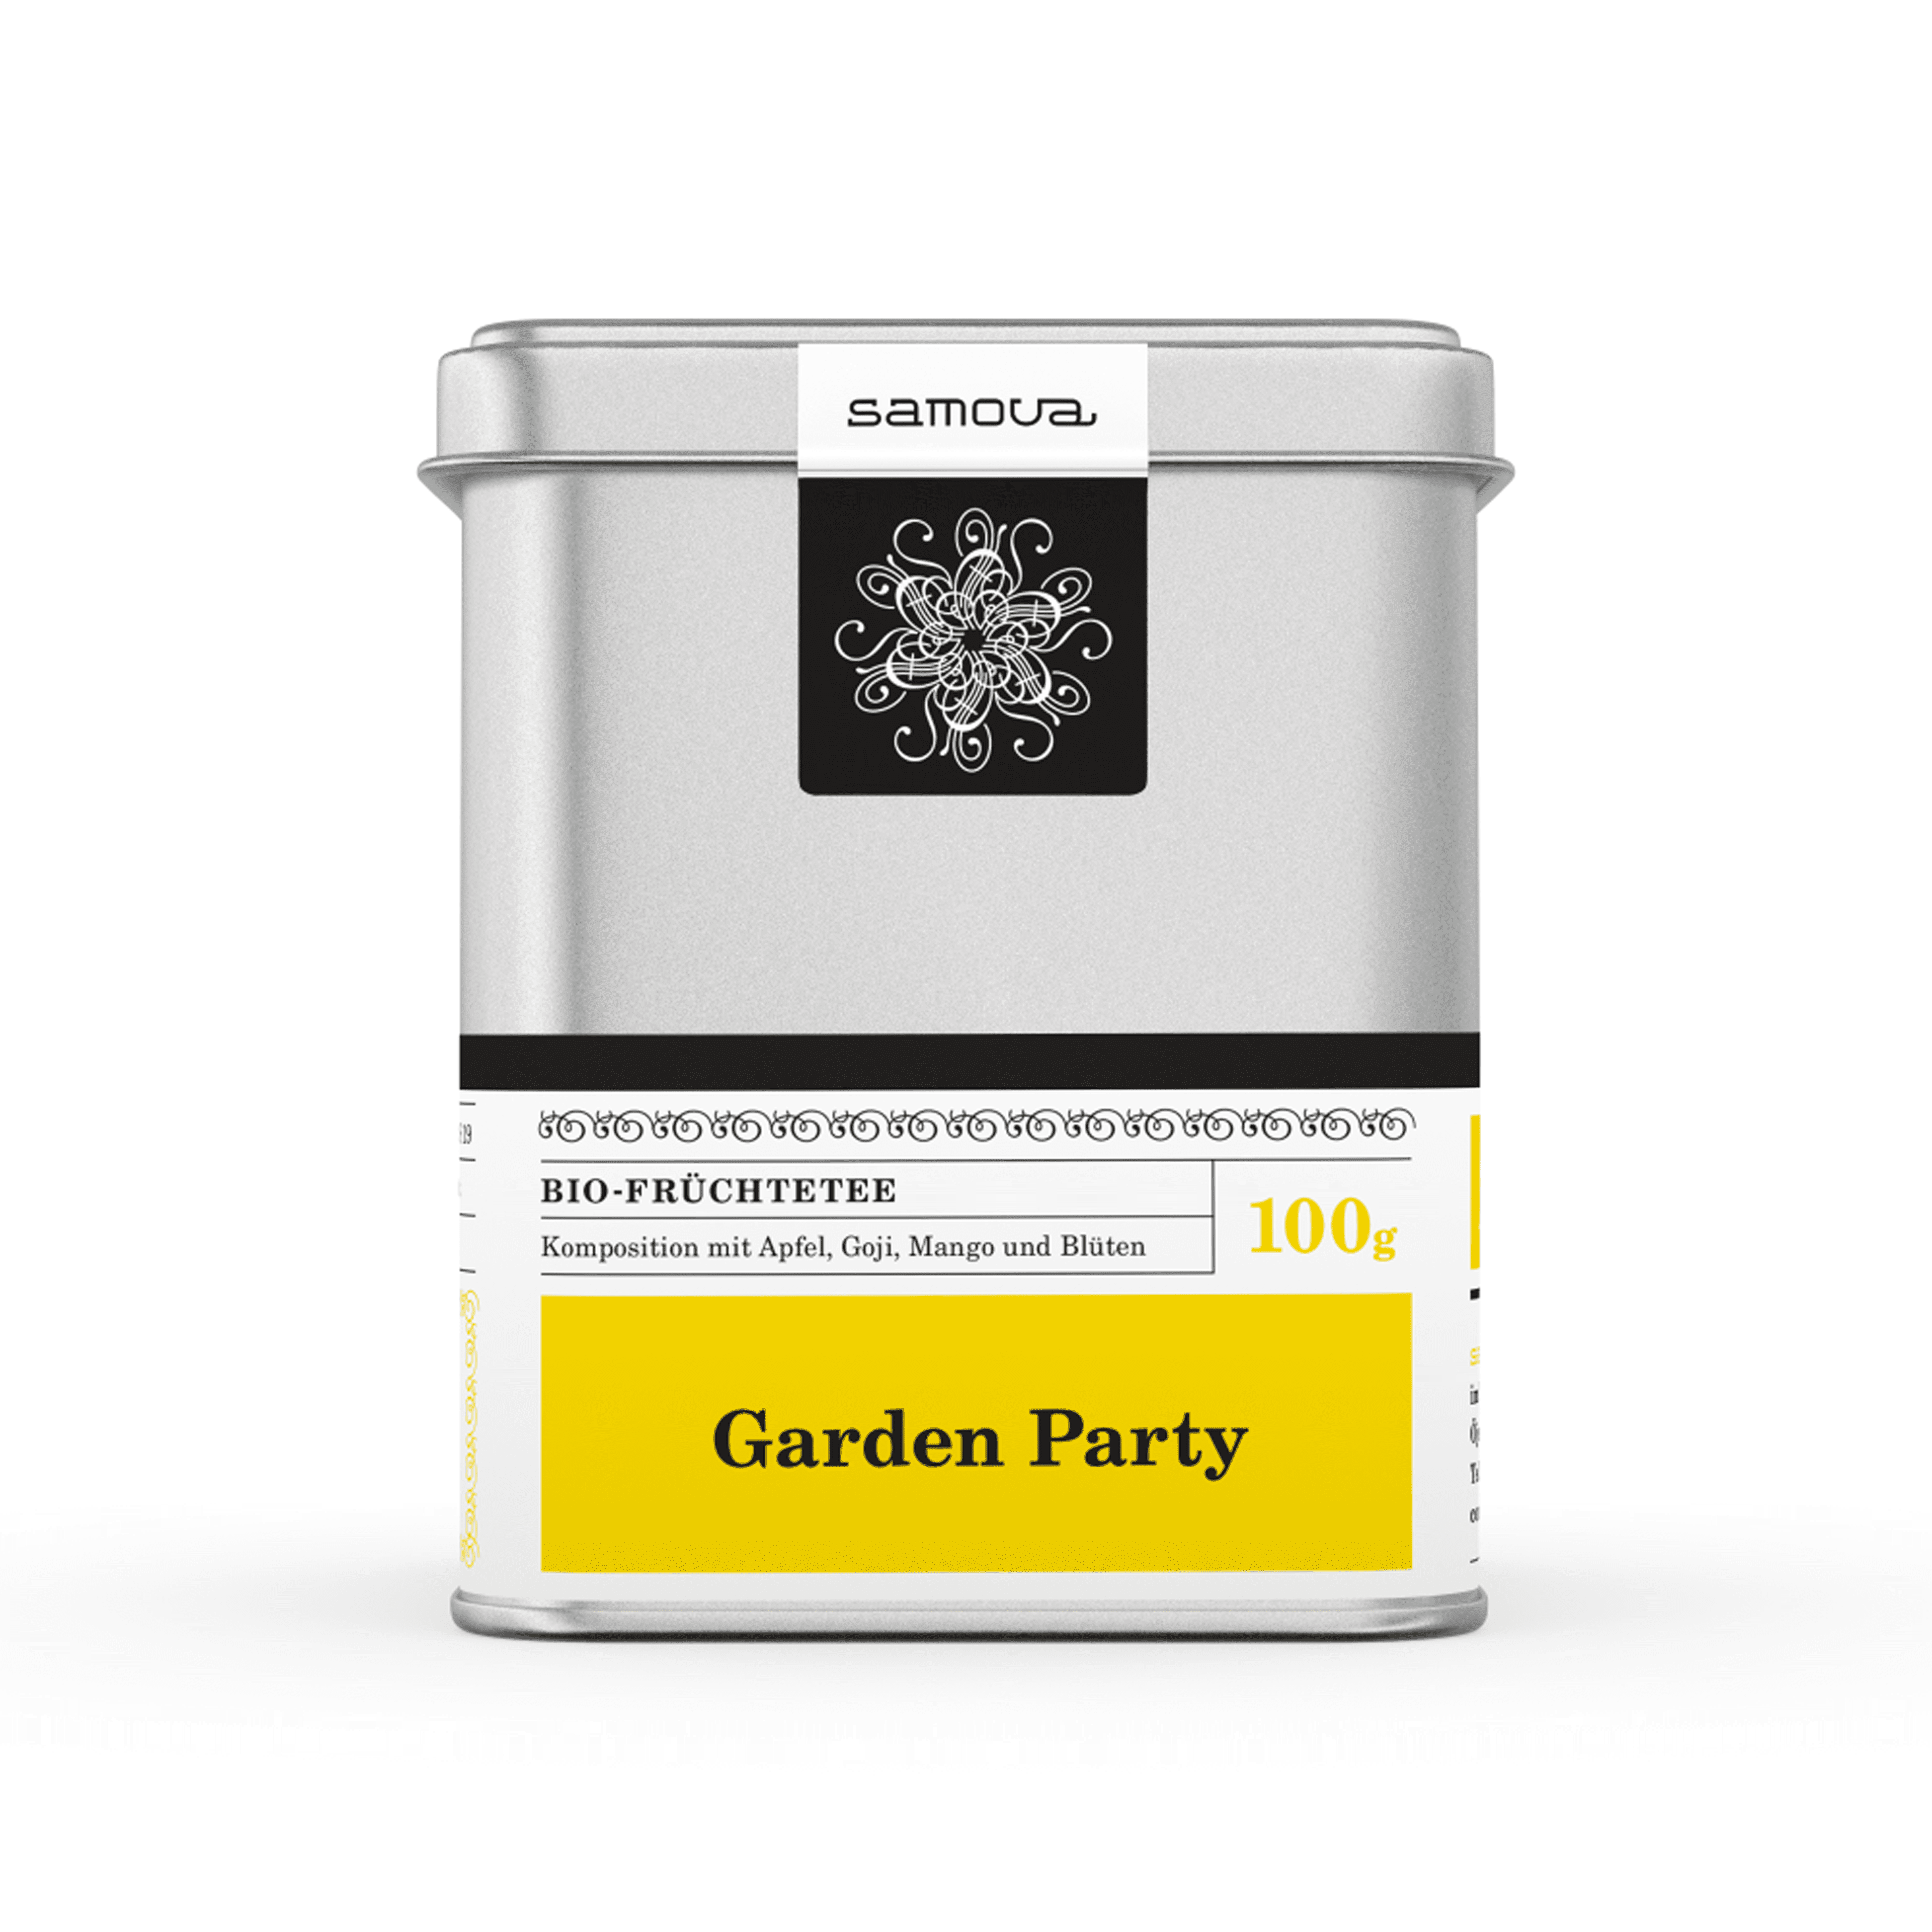 Can of Garden Party tea